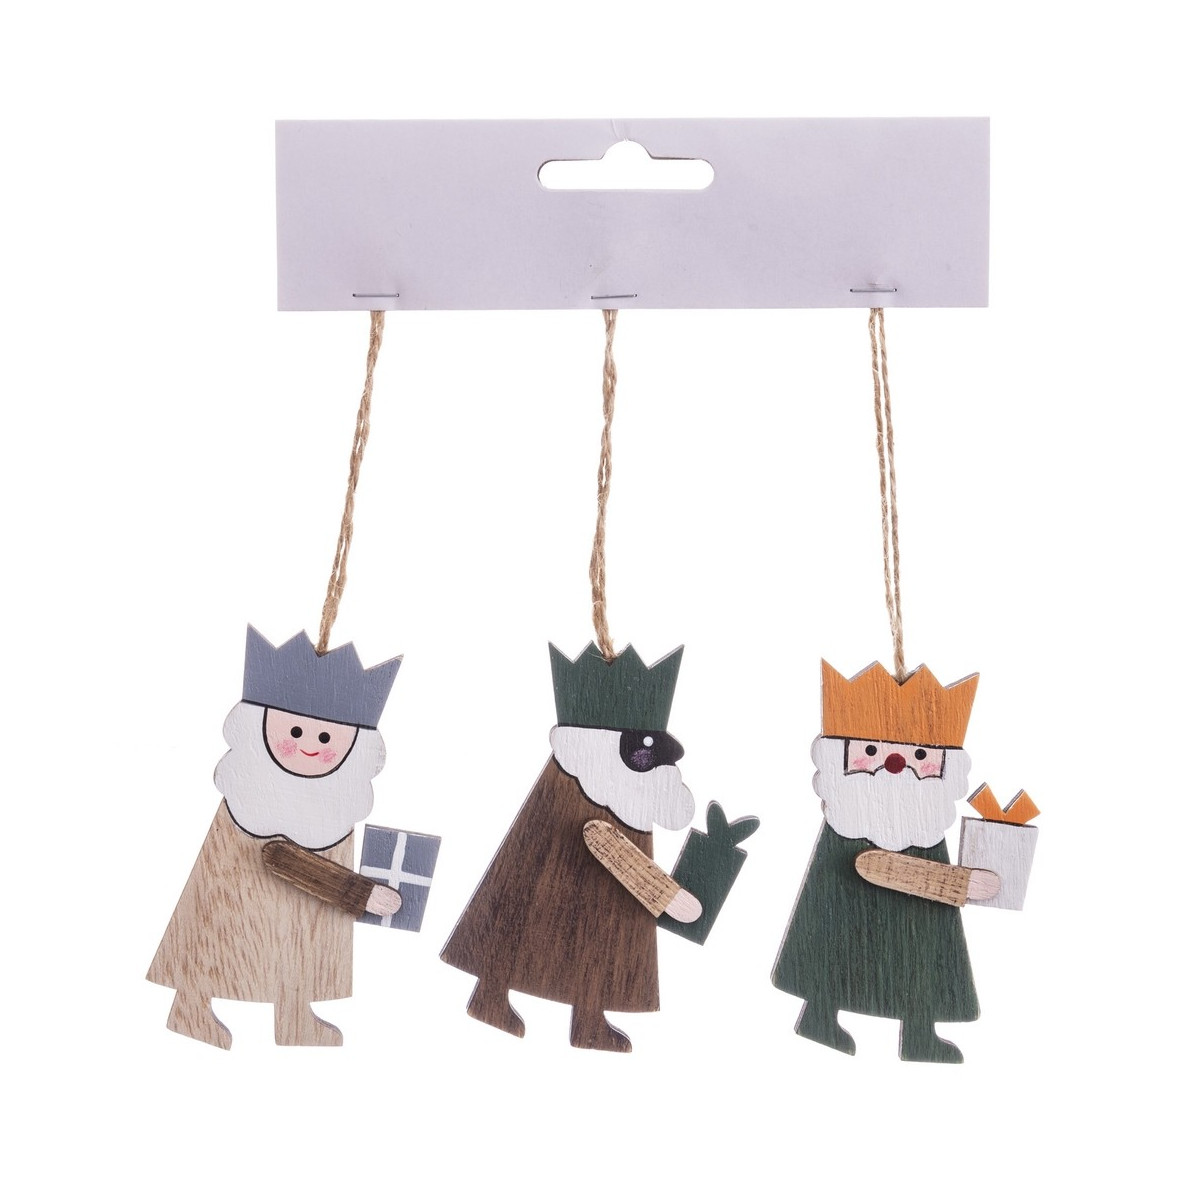 Set de 3 figuras de madera para arbol de navidad en forma de reyes magos